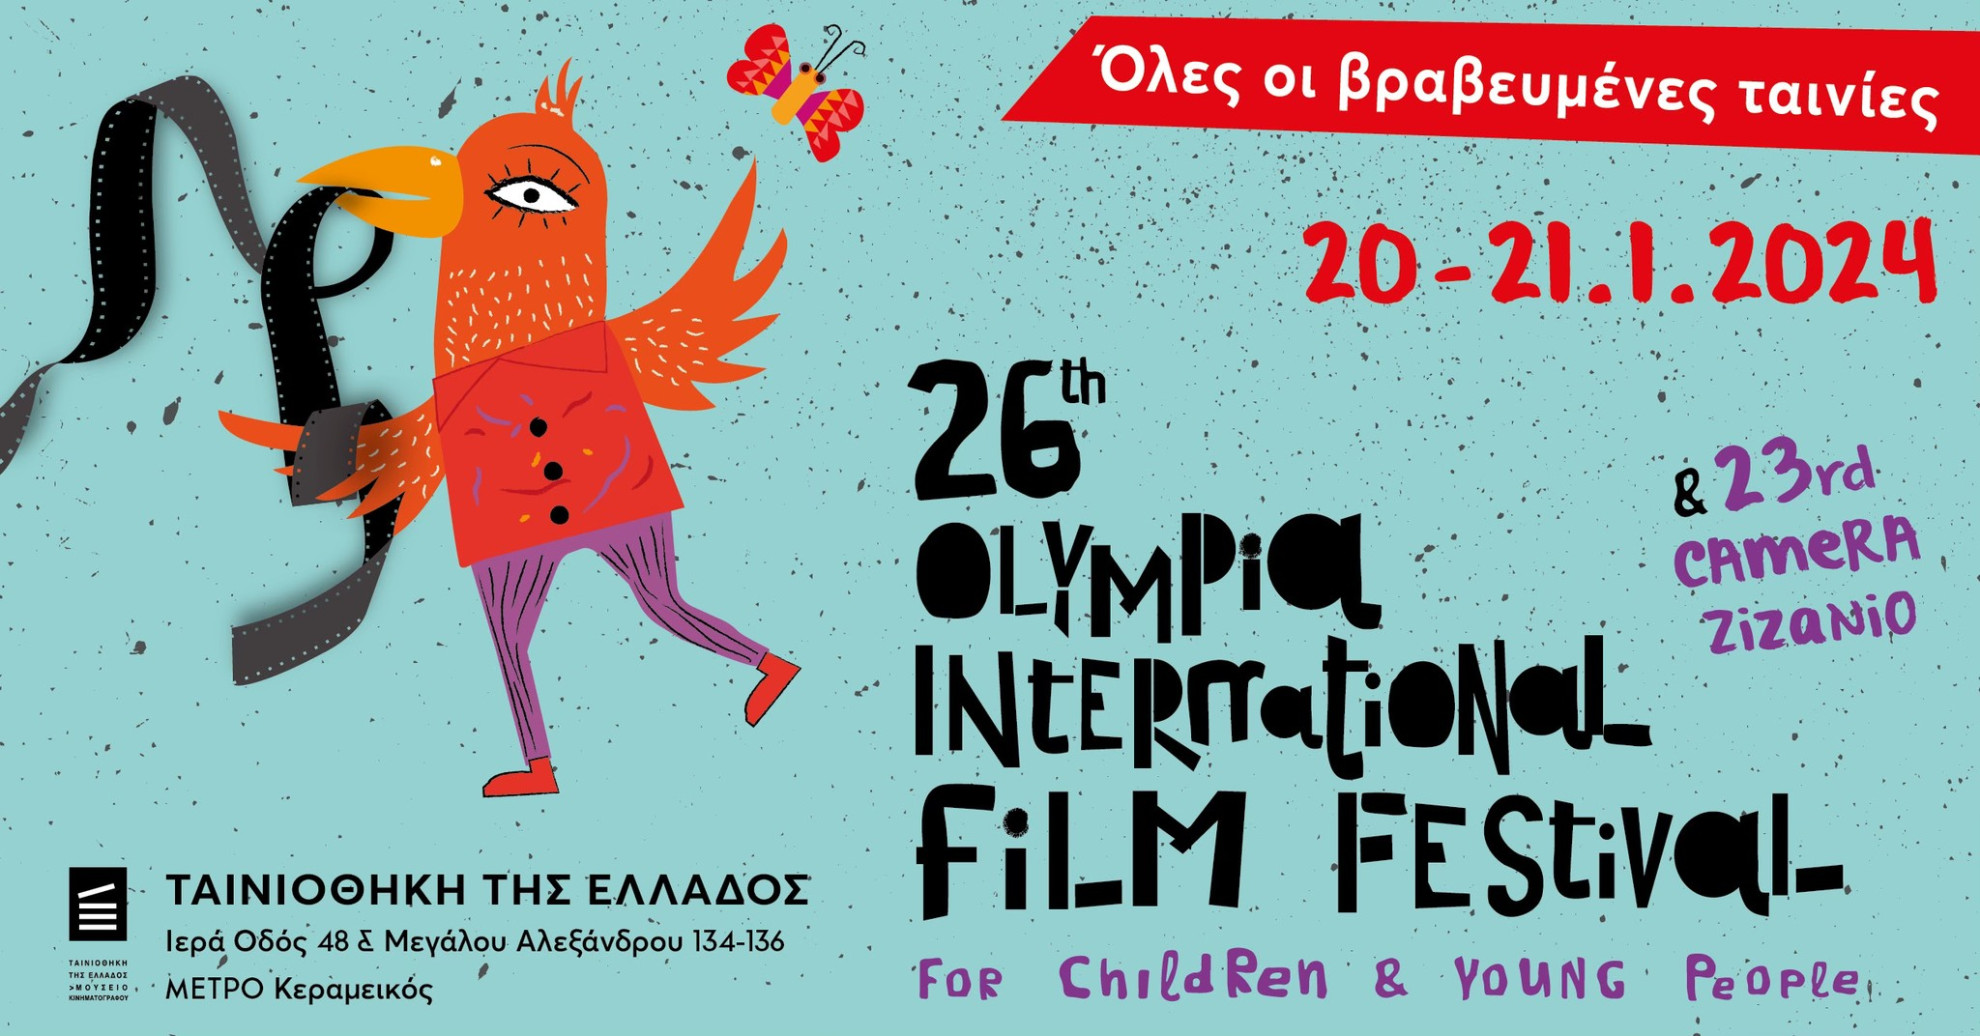 Το Φεστιβάλ Ολυμπίας έρχεται Ταινιοθήκη! - εικαστικό αφίσας φεστιβάλ ολυμπίας στην Ταινιοθήκη